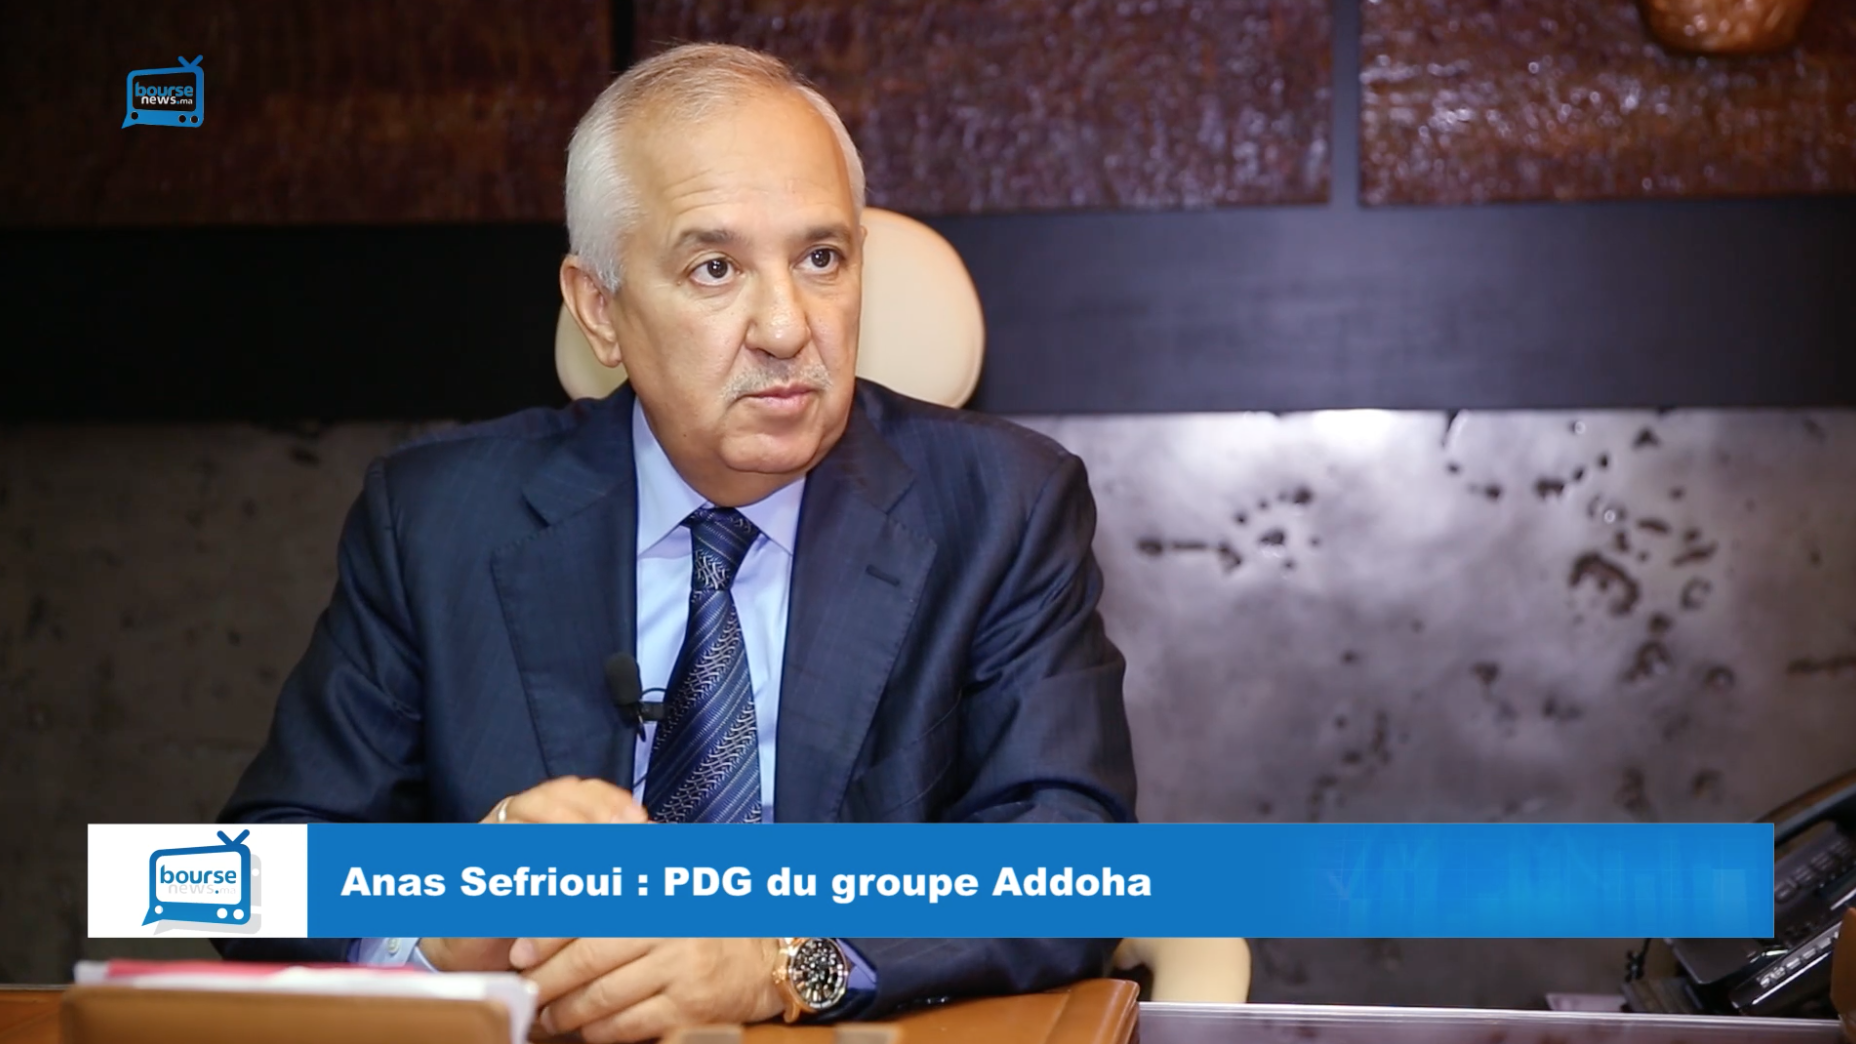 (VIDEO) : Au micro de Boursenews, Anas Sefrioui se projette déjà dans léaprès-PGC 